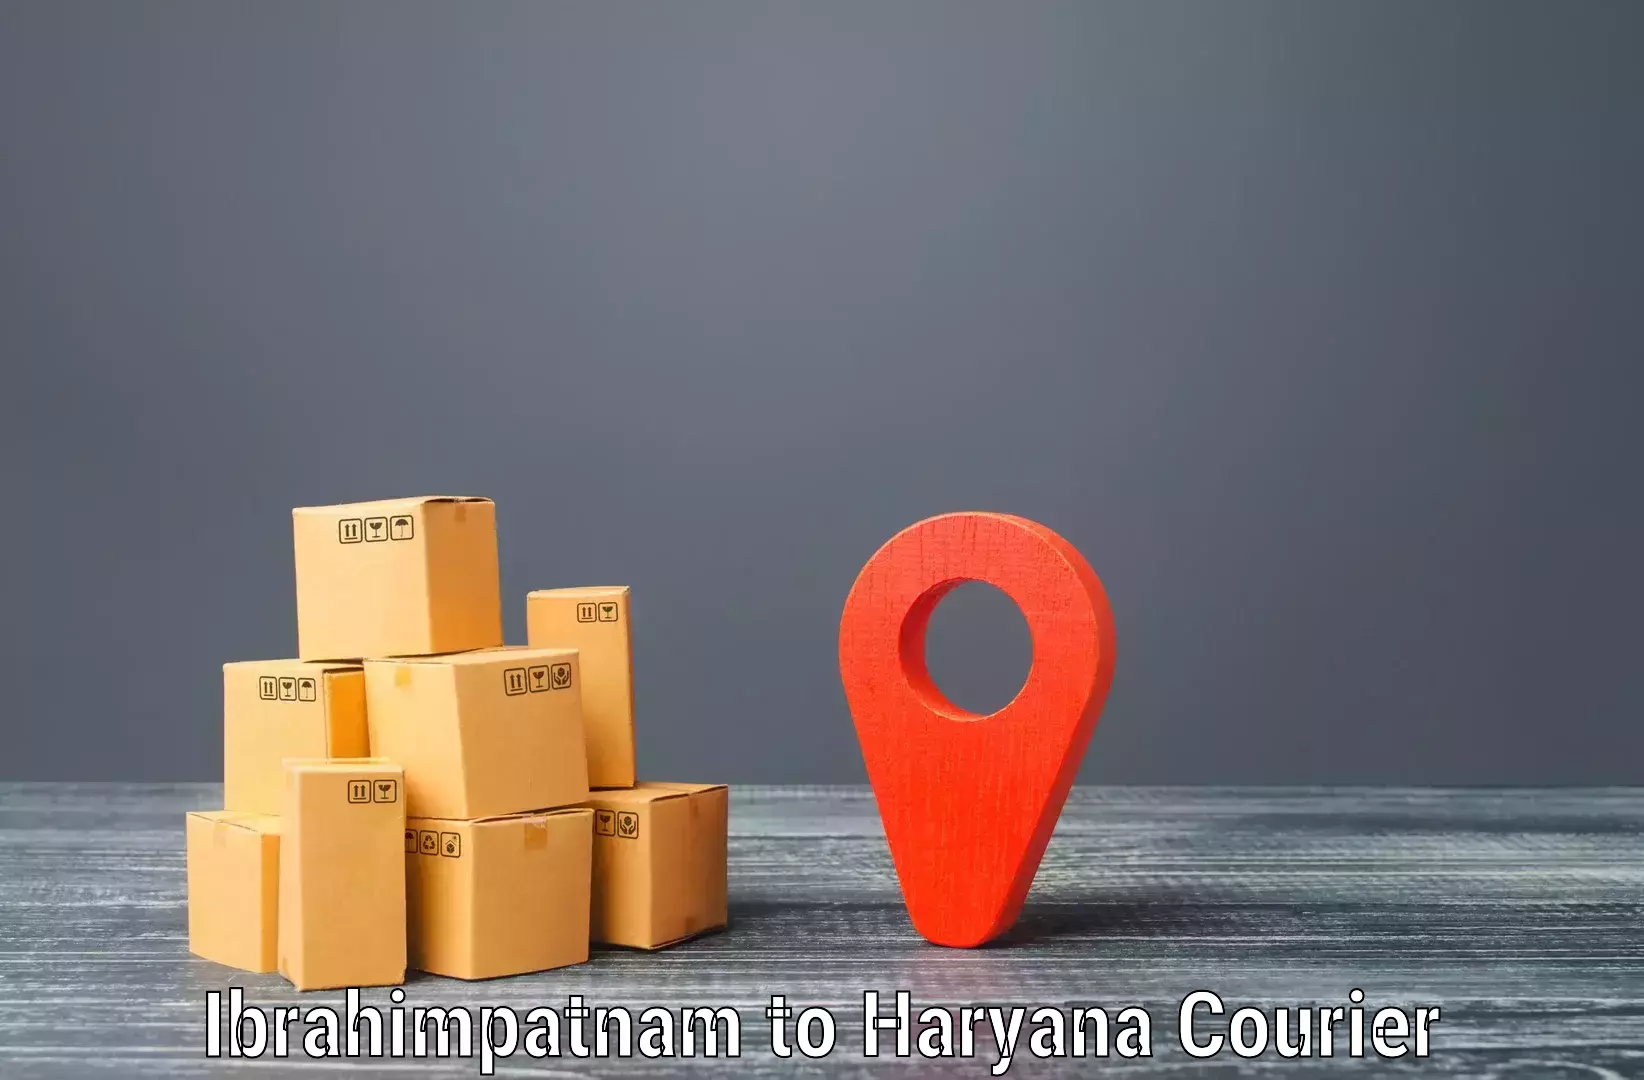 Modern courier technology Ibrahimpatnam to Dharuhera